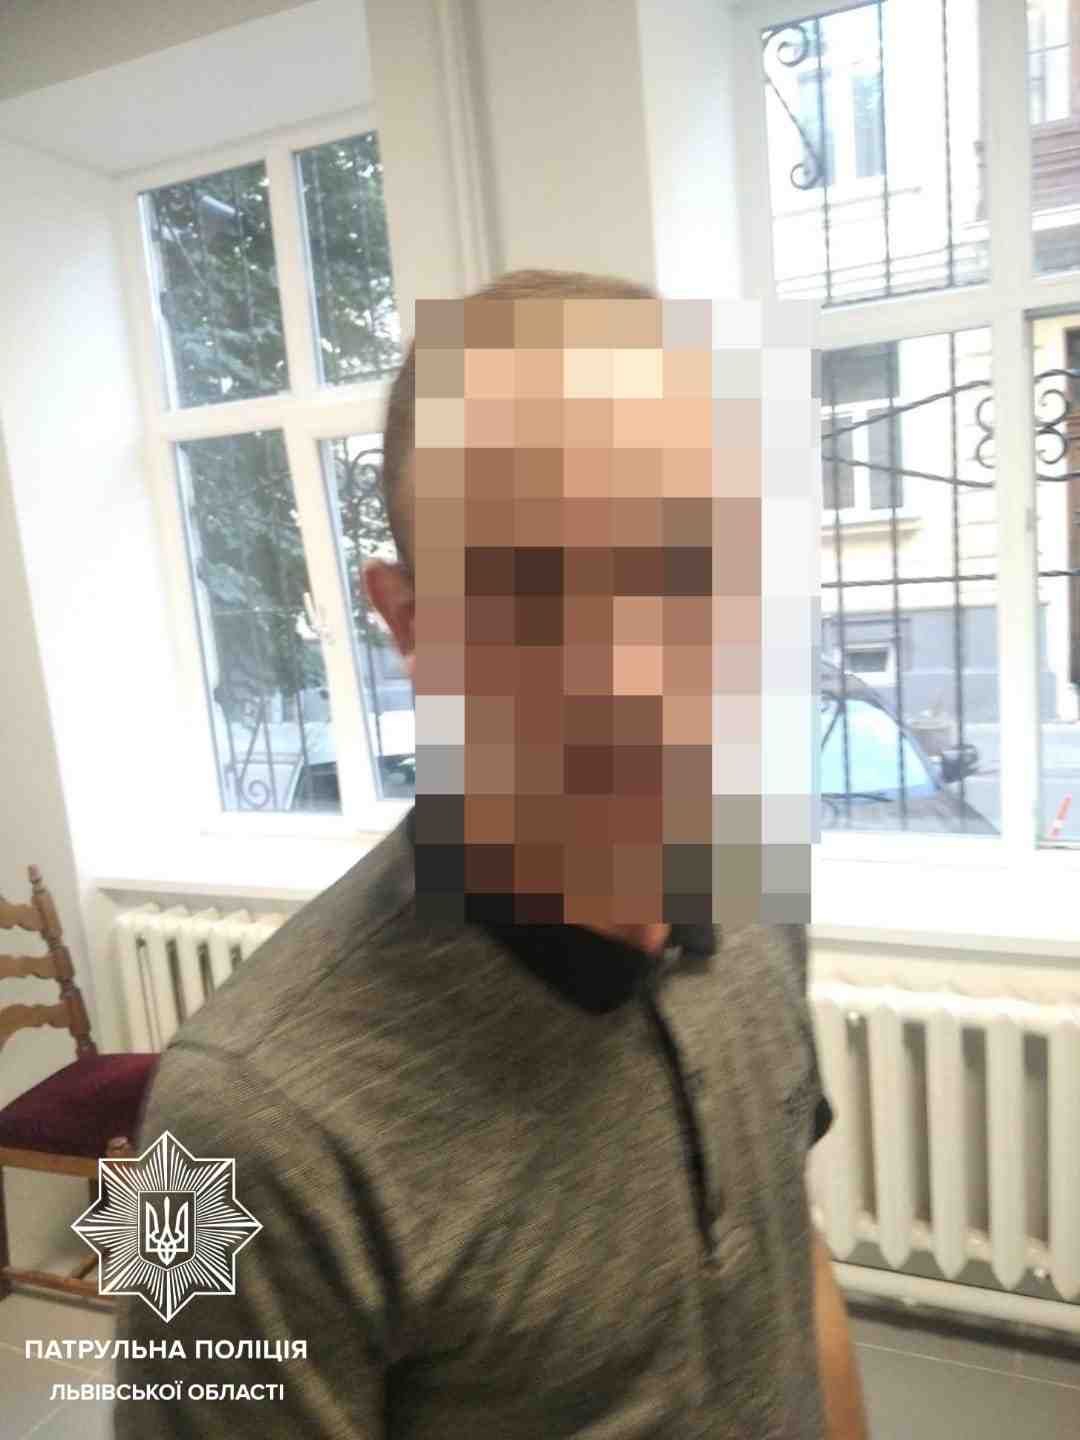 Обікрав іноземця: у Львові затримали розшукуваного за жорстокий злочин чоловіка (фото)